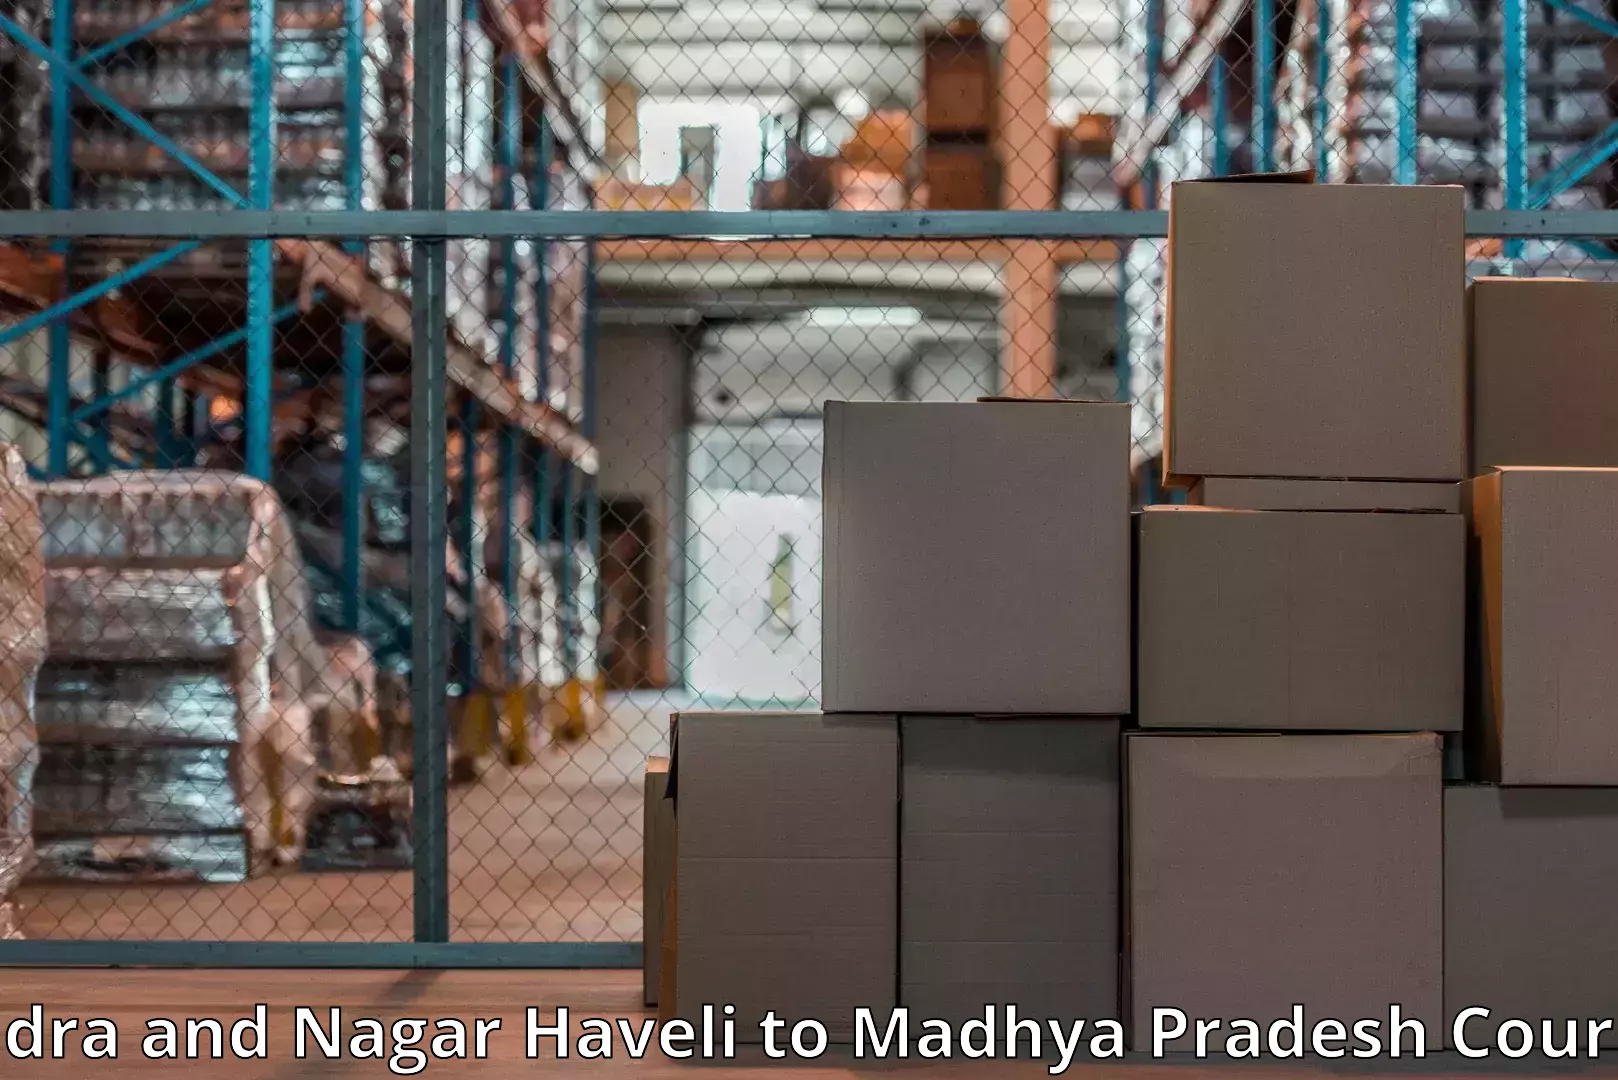 Efficient moving company Dadra and Nagar Haveli to Chhindwara